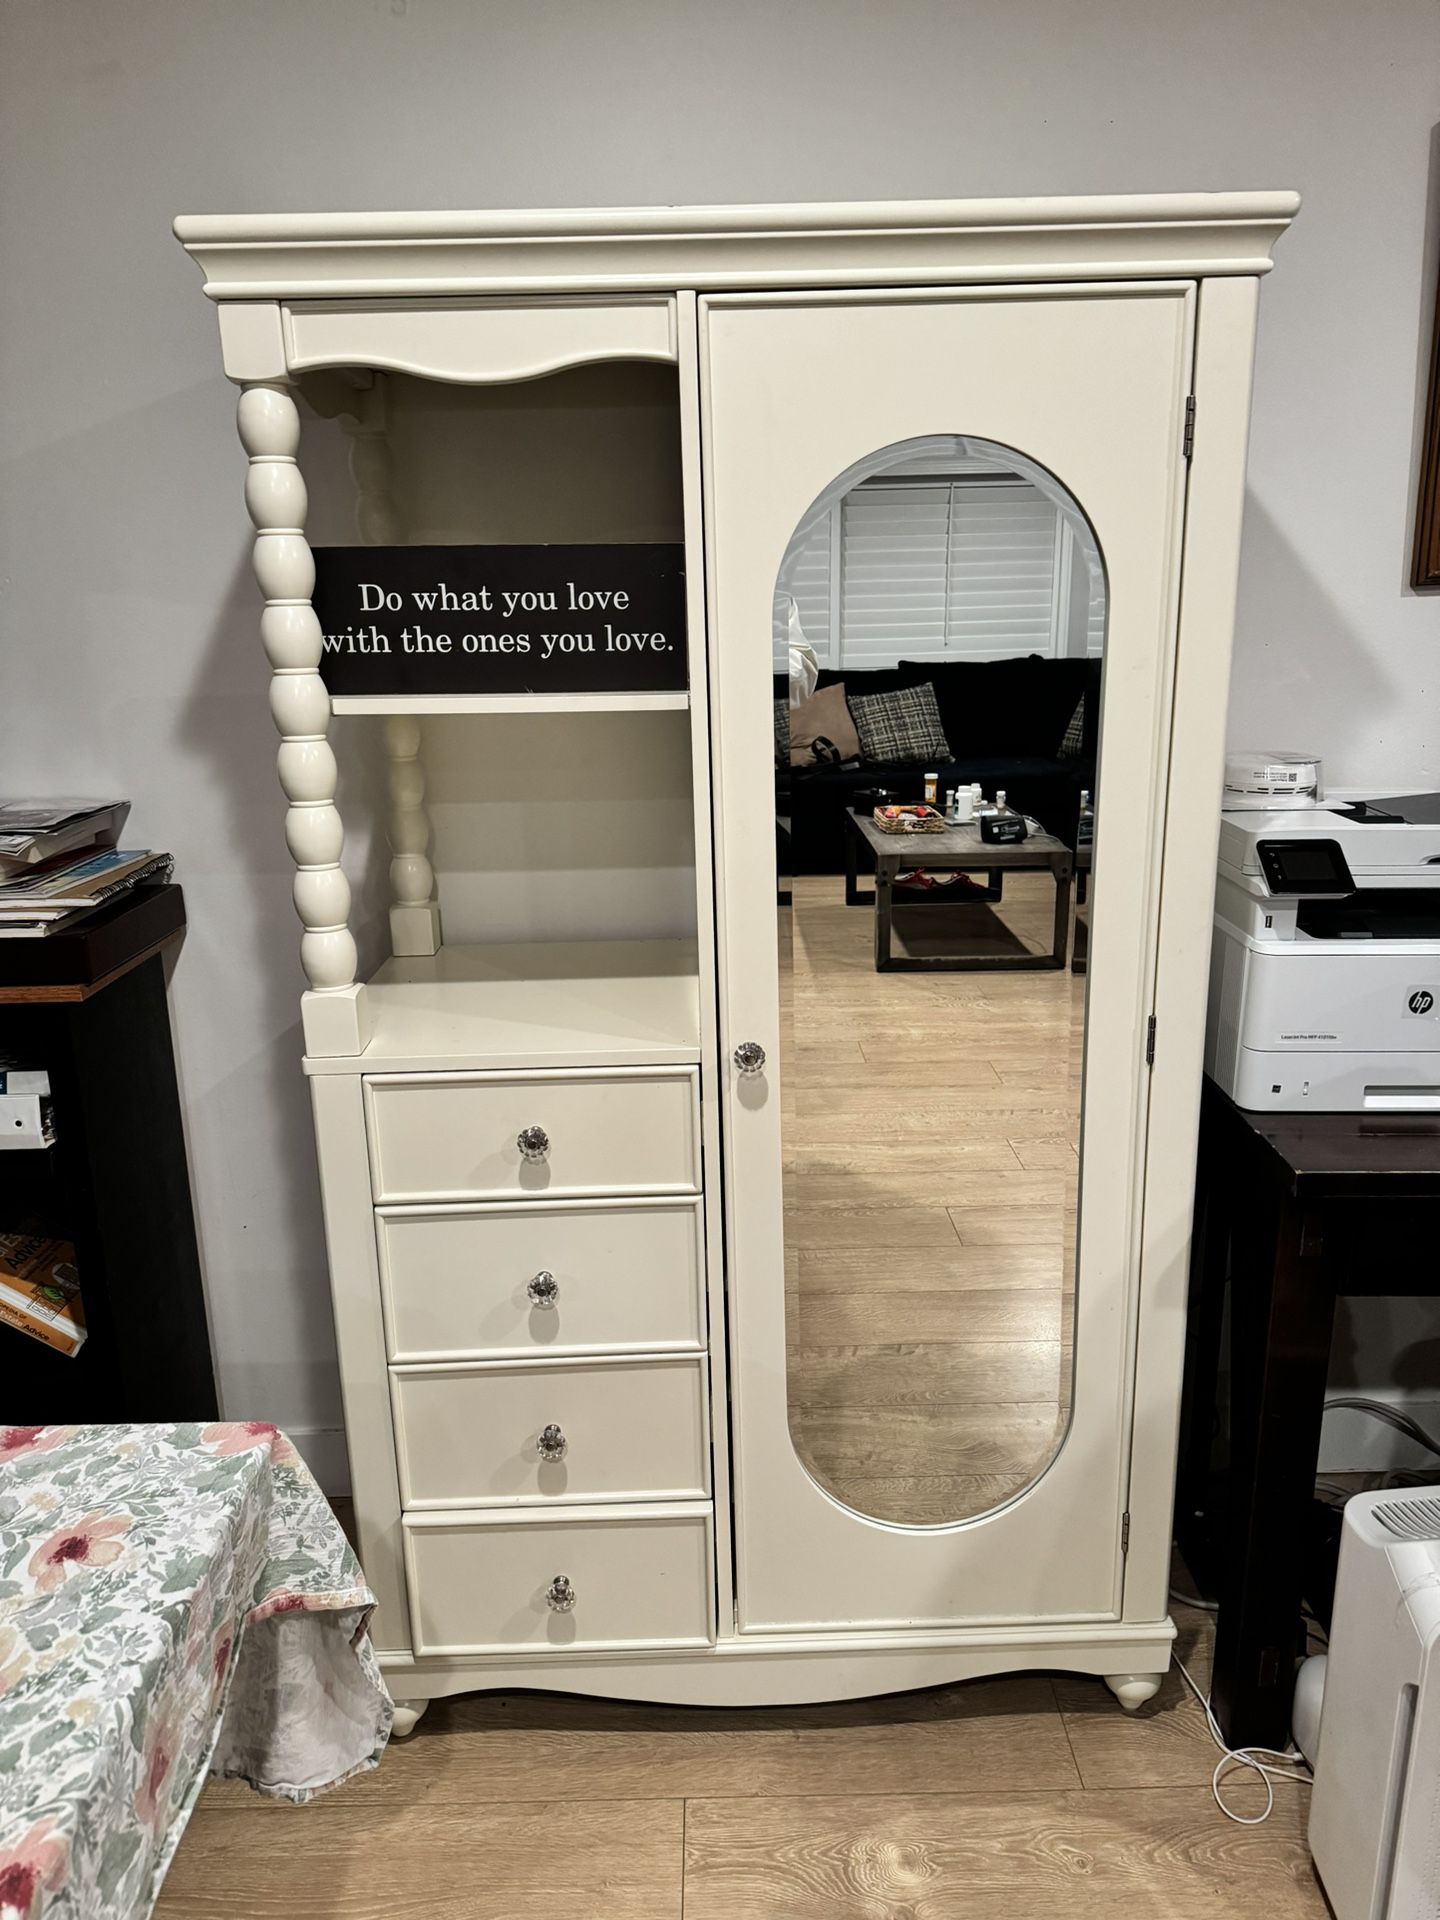 White Mirror Dresser